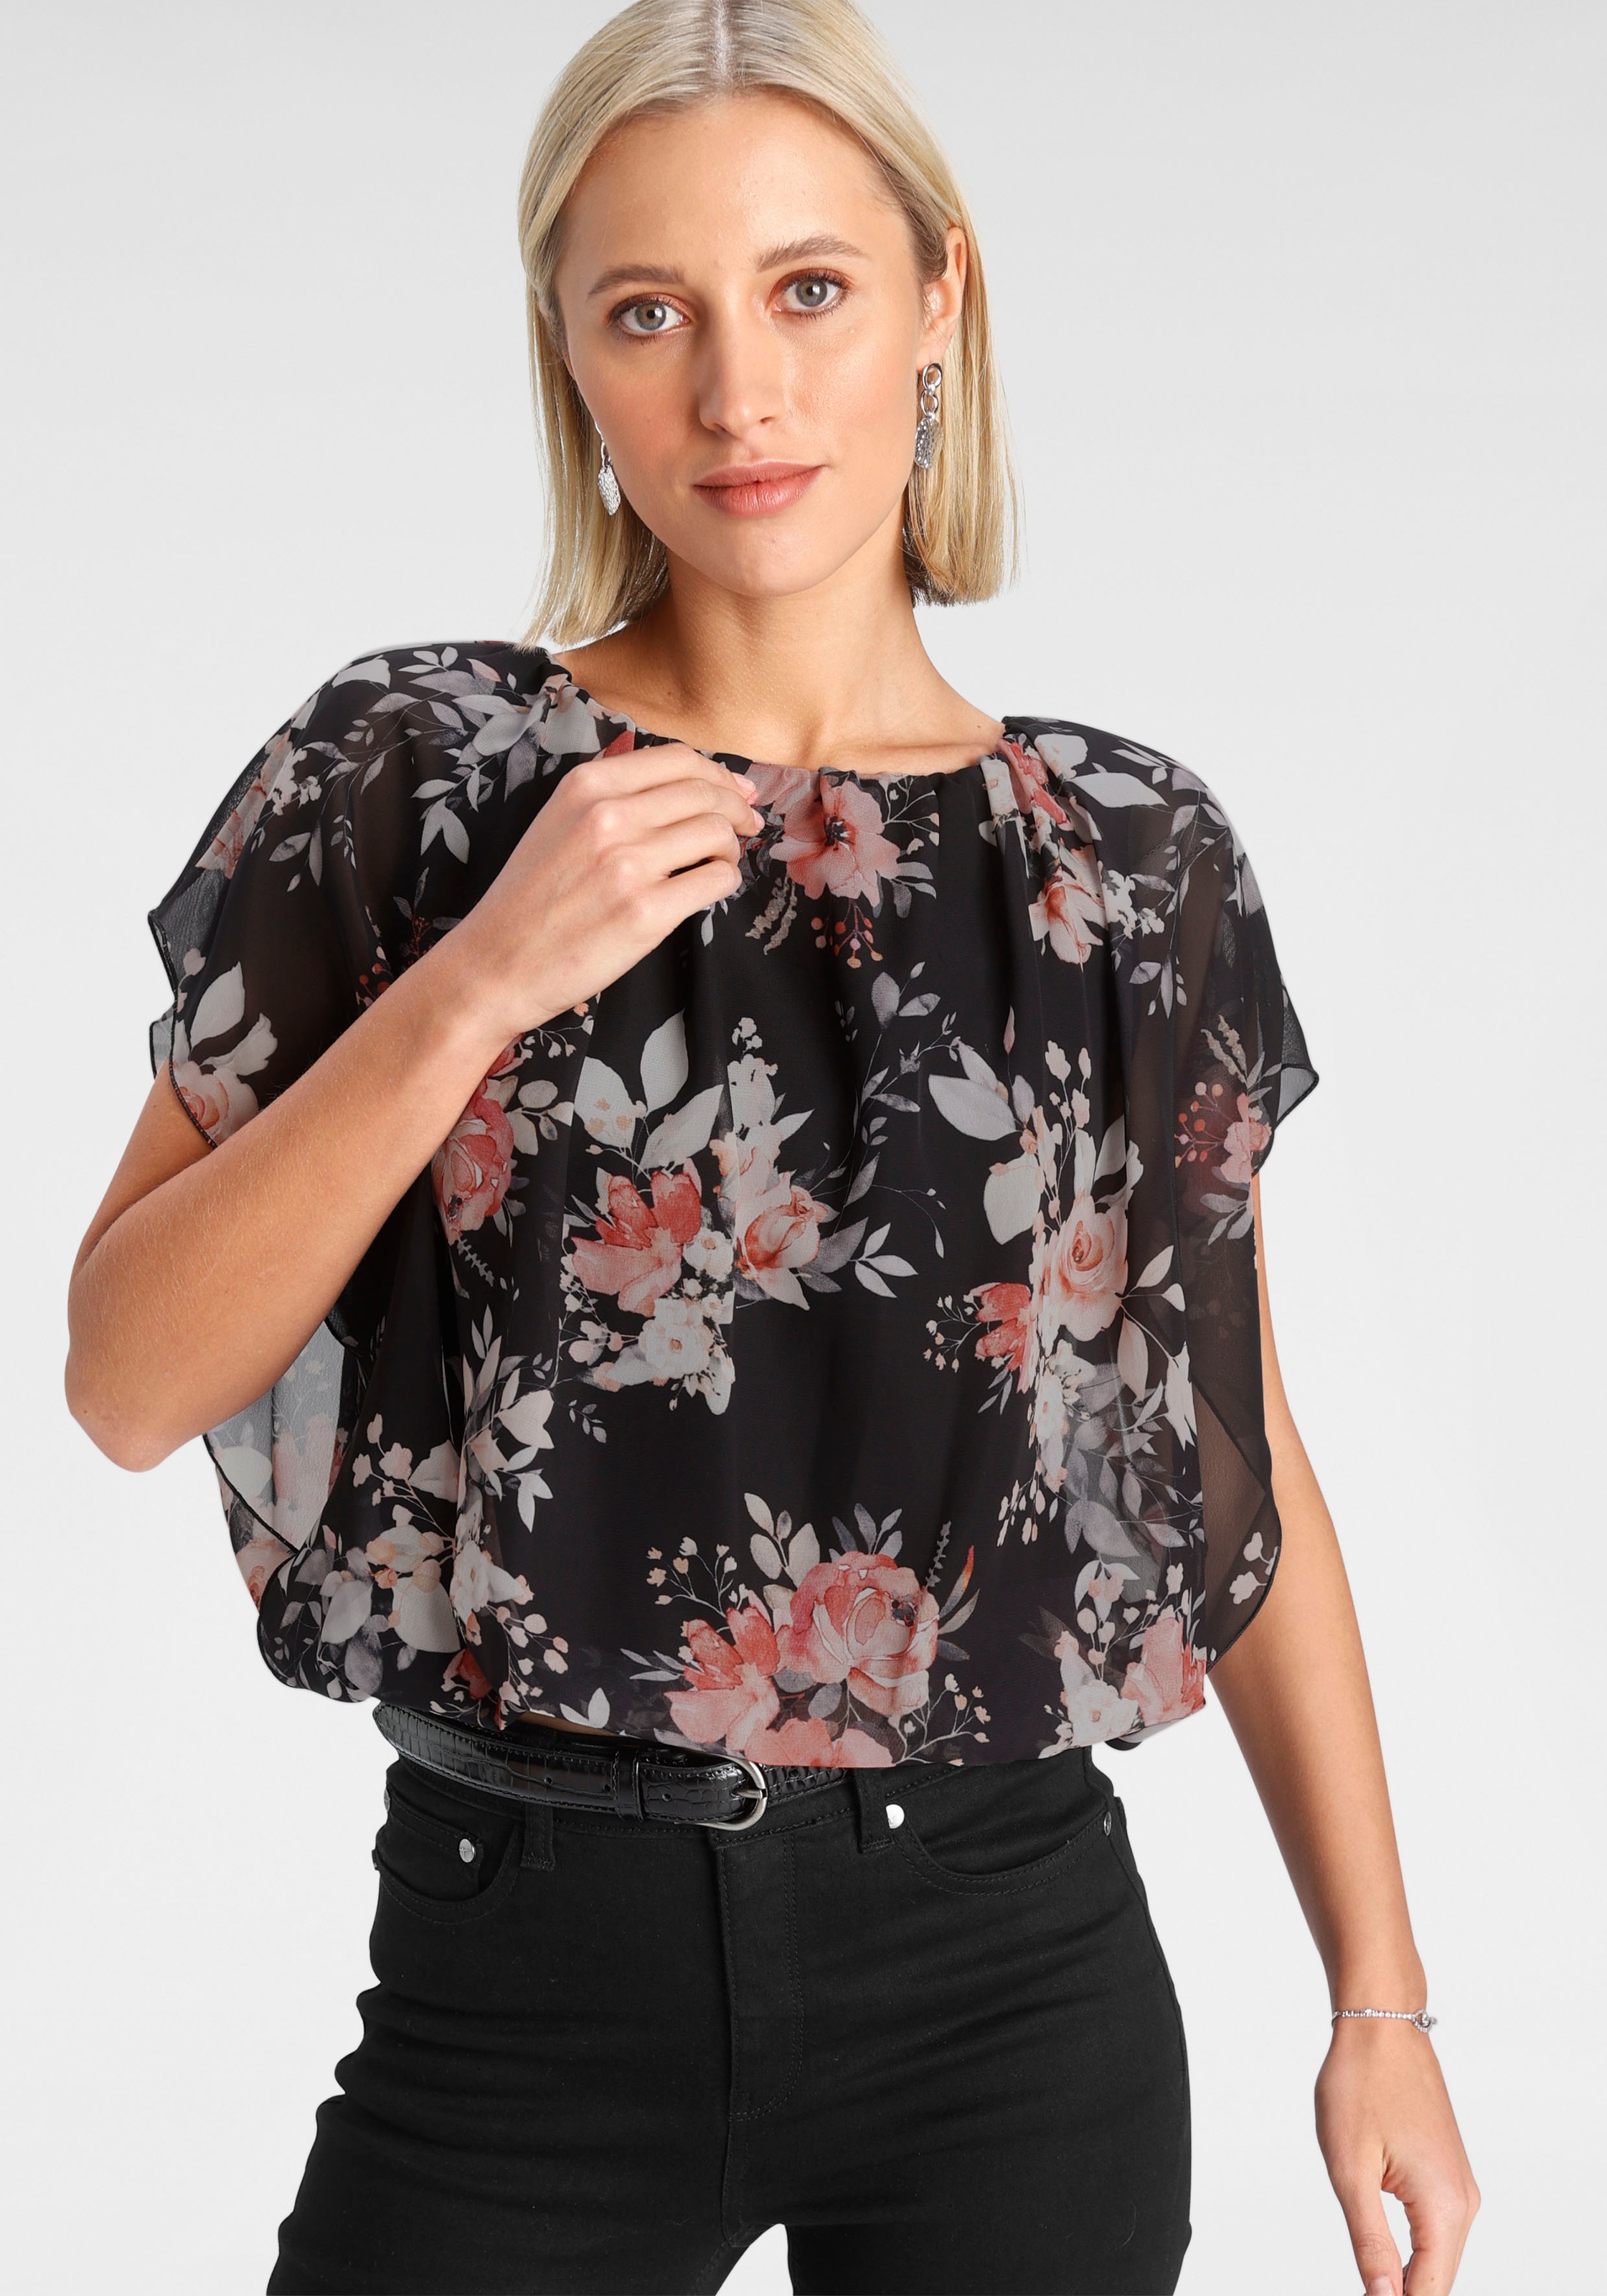 mit | online BAUR kaufen bedrucktem Chiffon Shirtbluse, Melrose